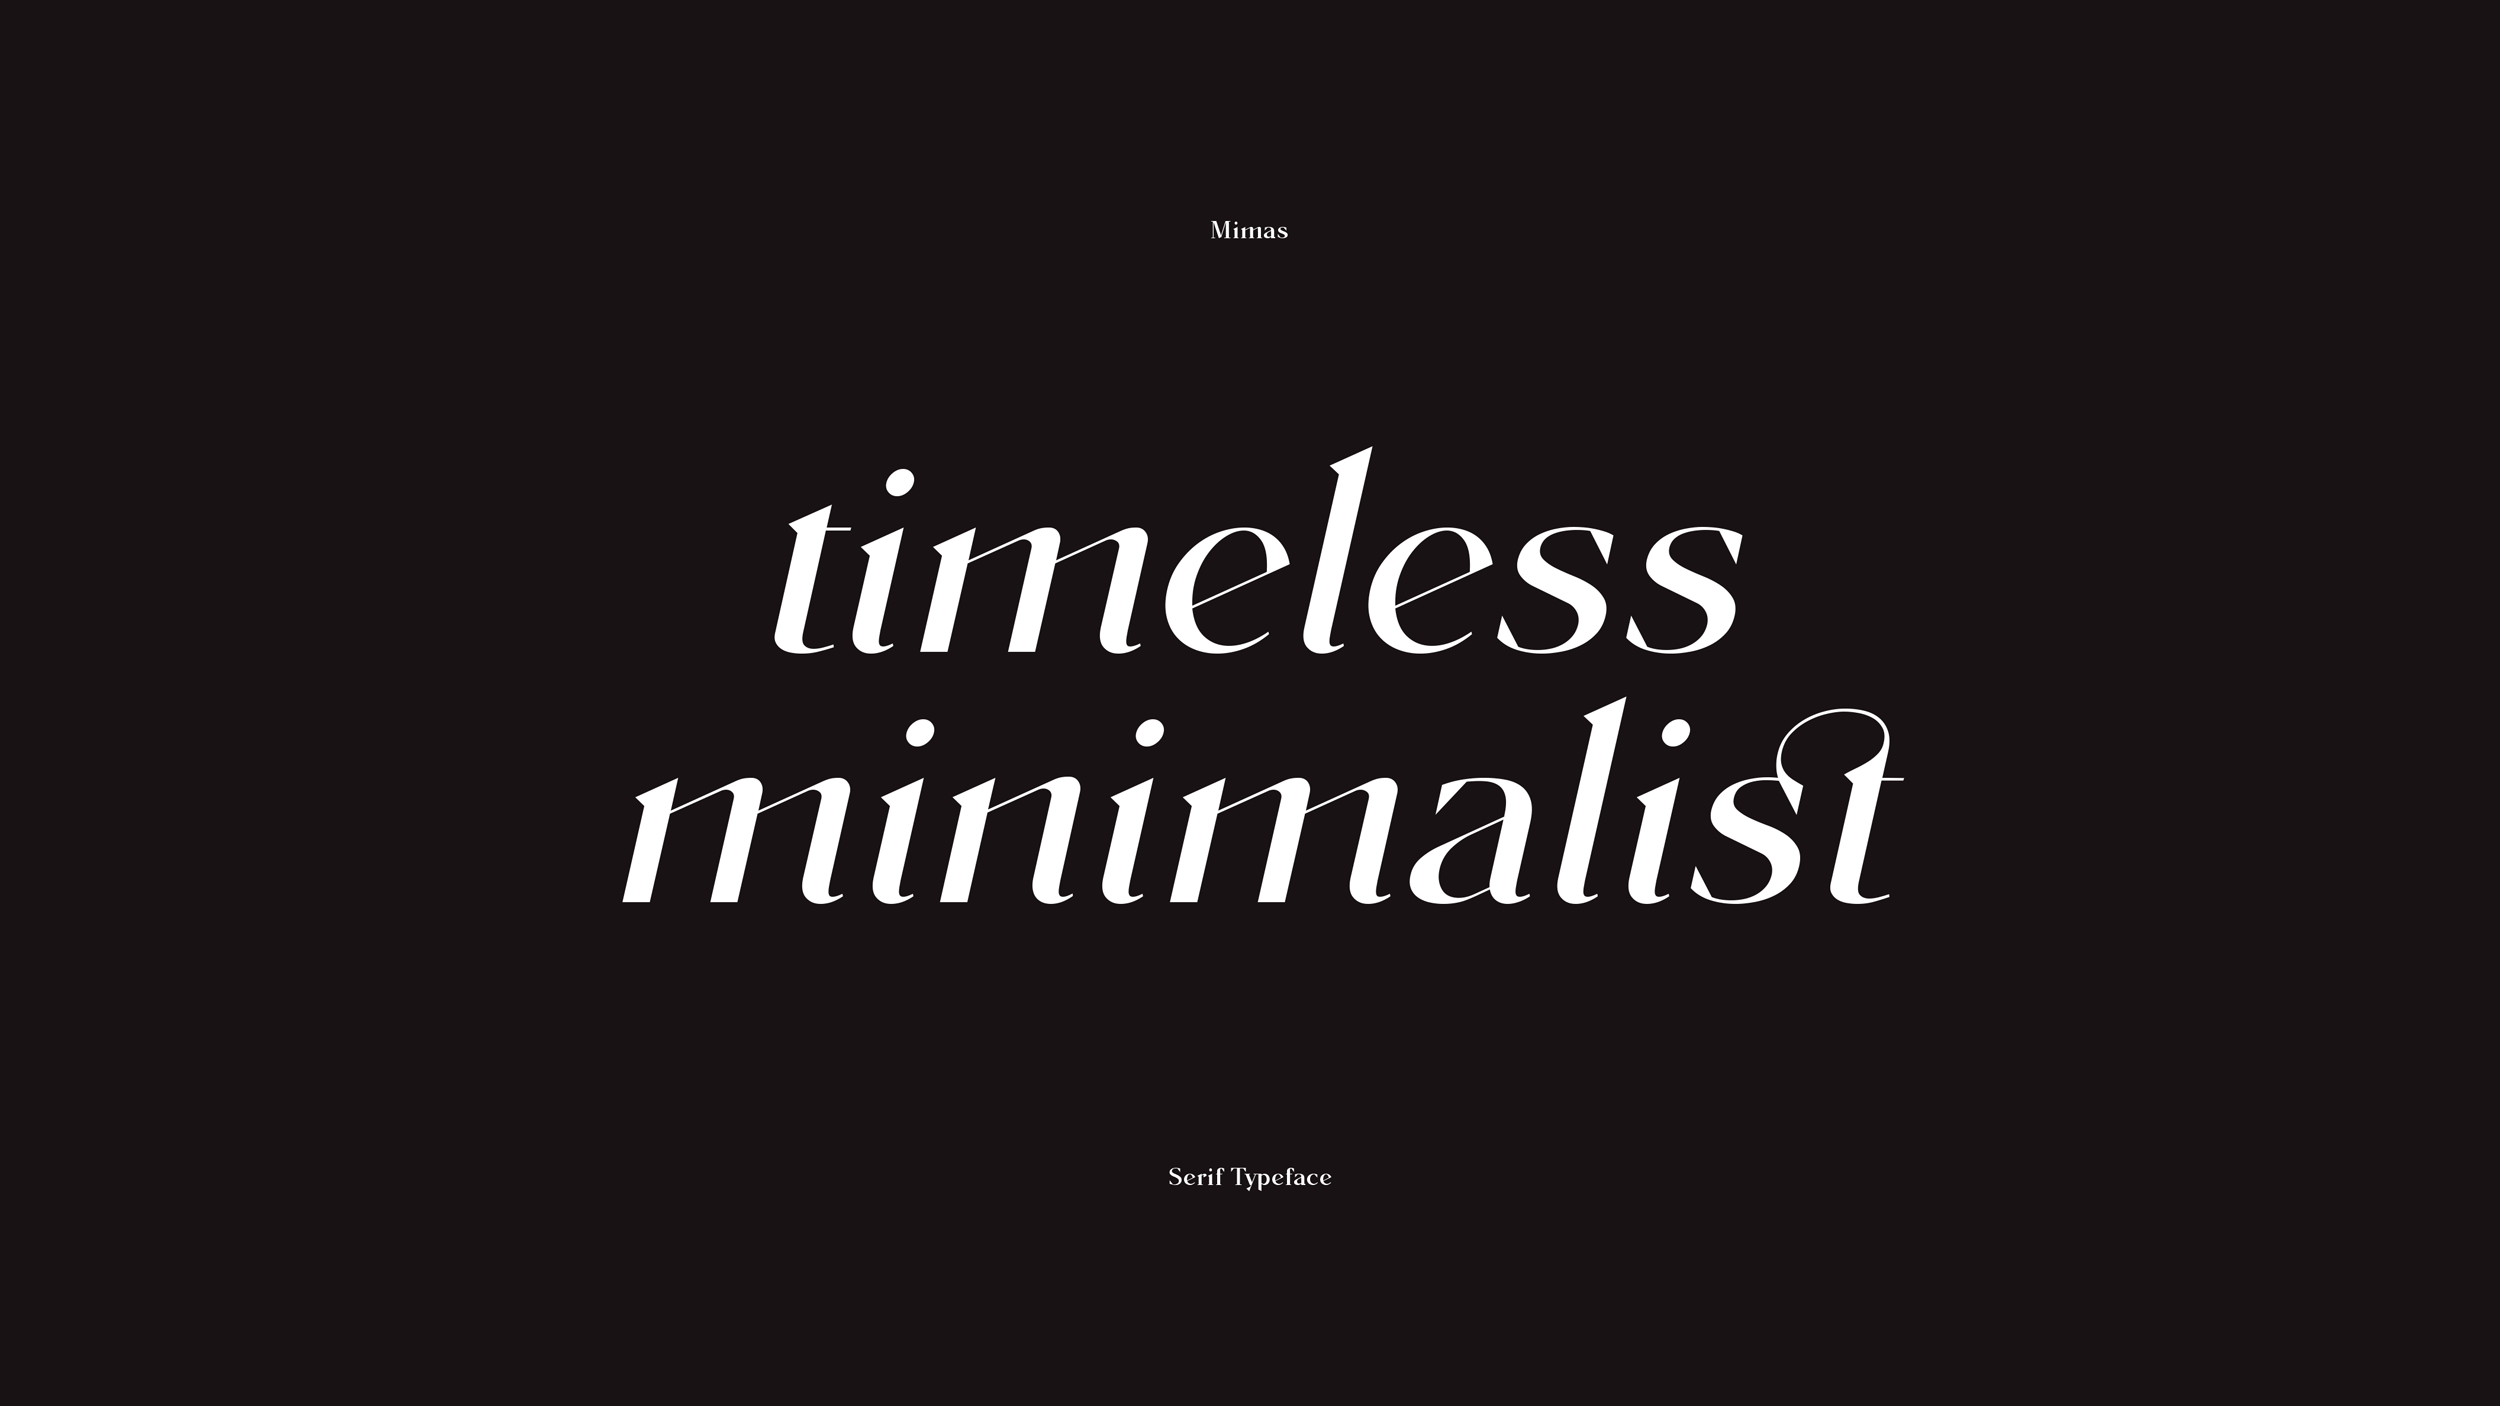 Omecara-Mimas-Typeface-Design-02